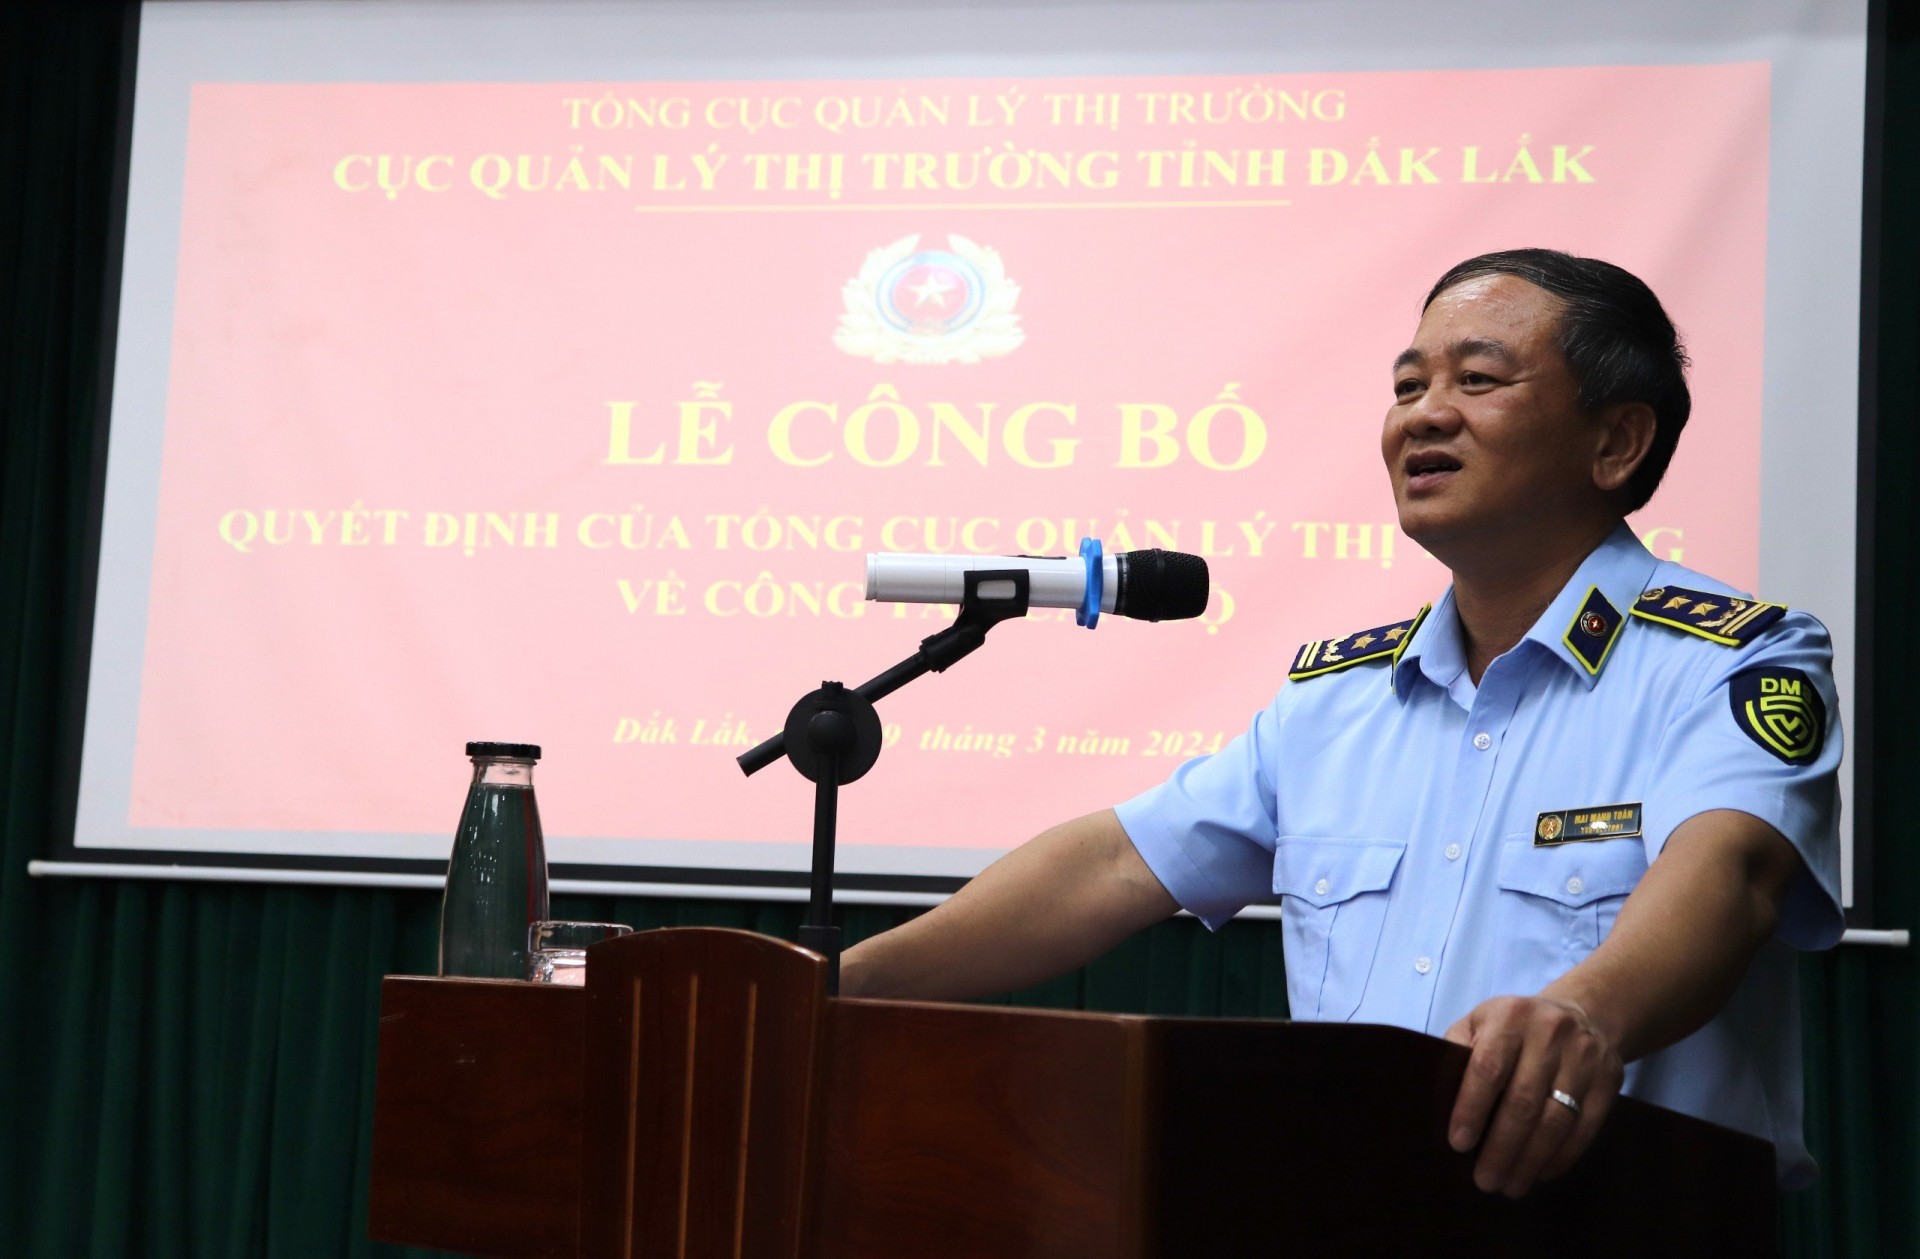 Ông Mai Mạnh Toàn- Bí thư Đảng ủy, Cục trưởng Cục Quản lý thị trường tỉnh Đắk Lắk phát biểu tại buổi lễ.  